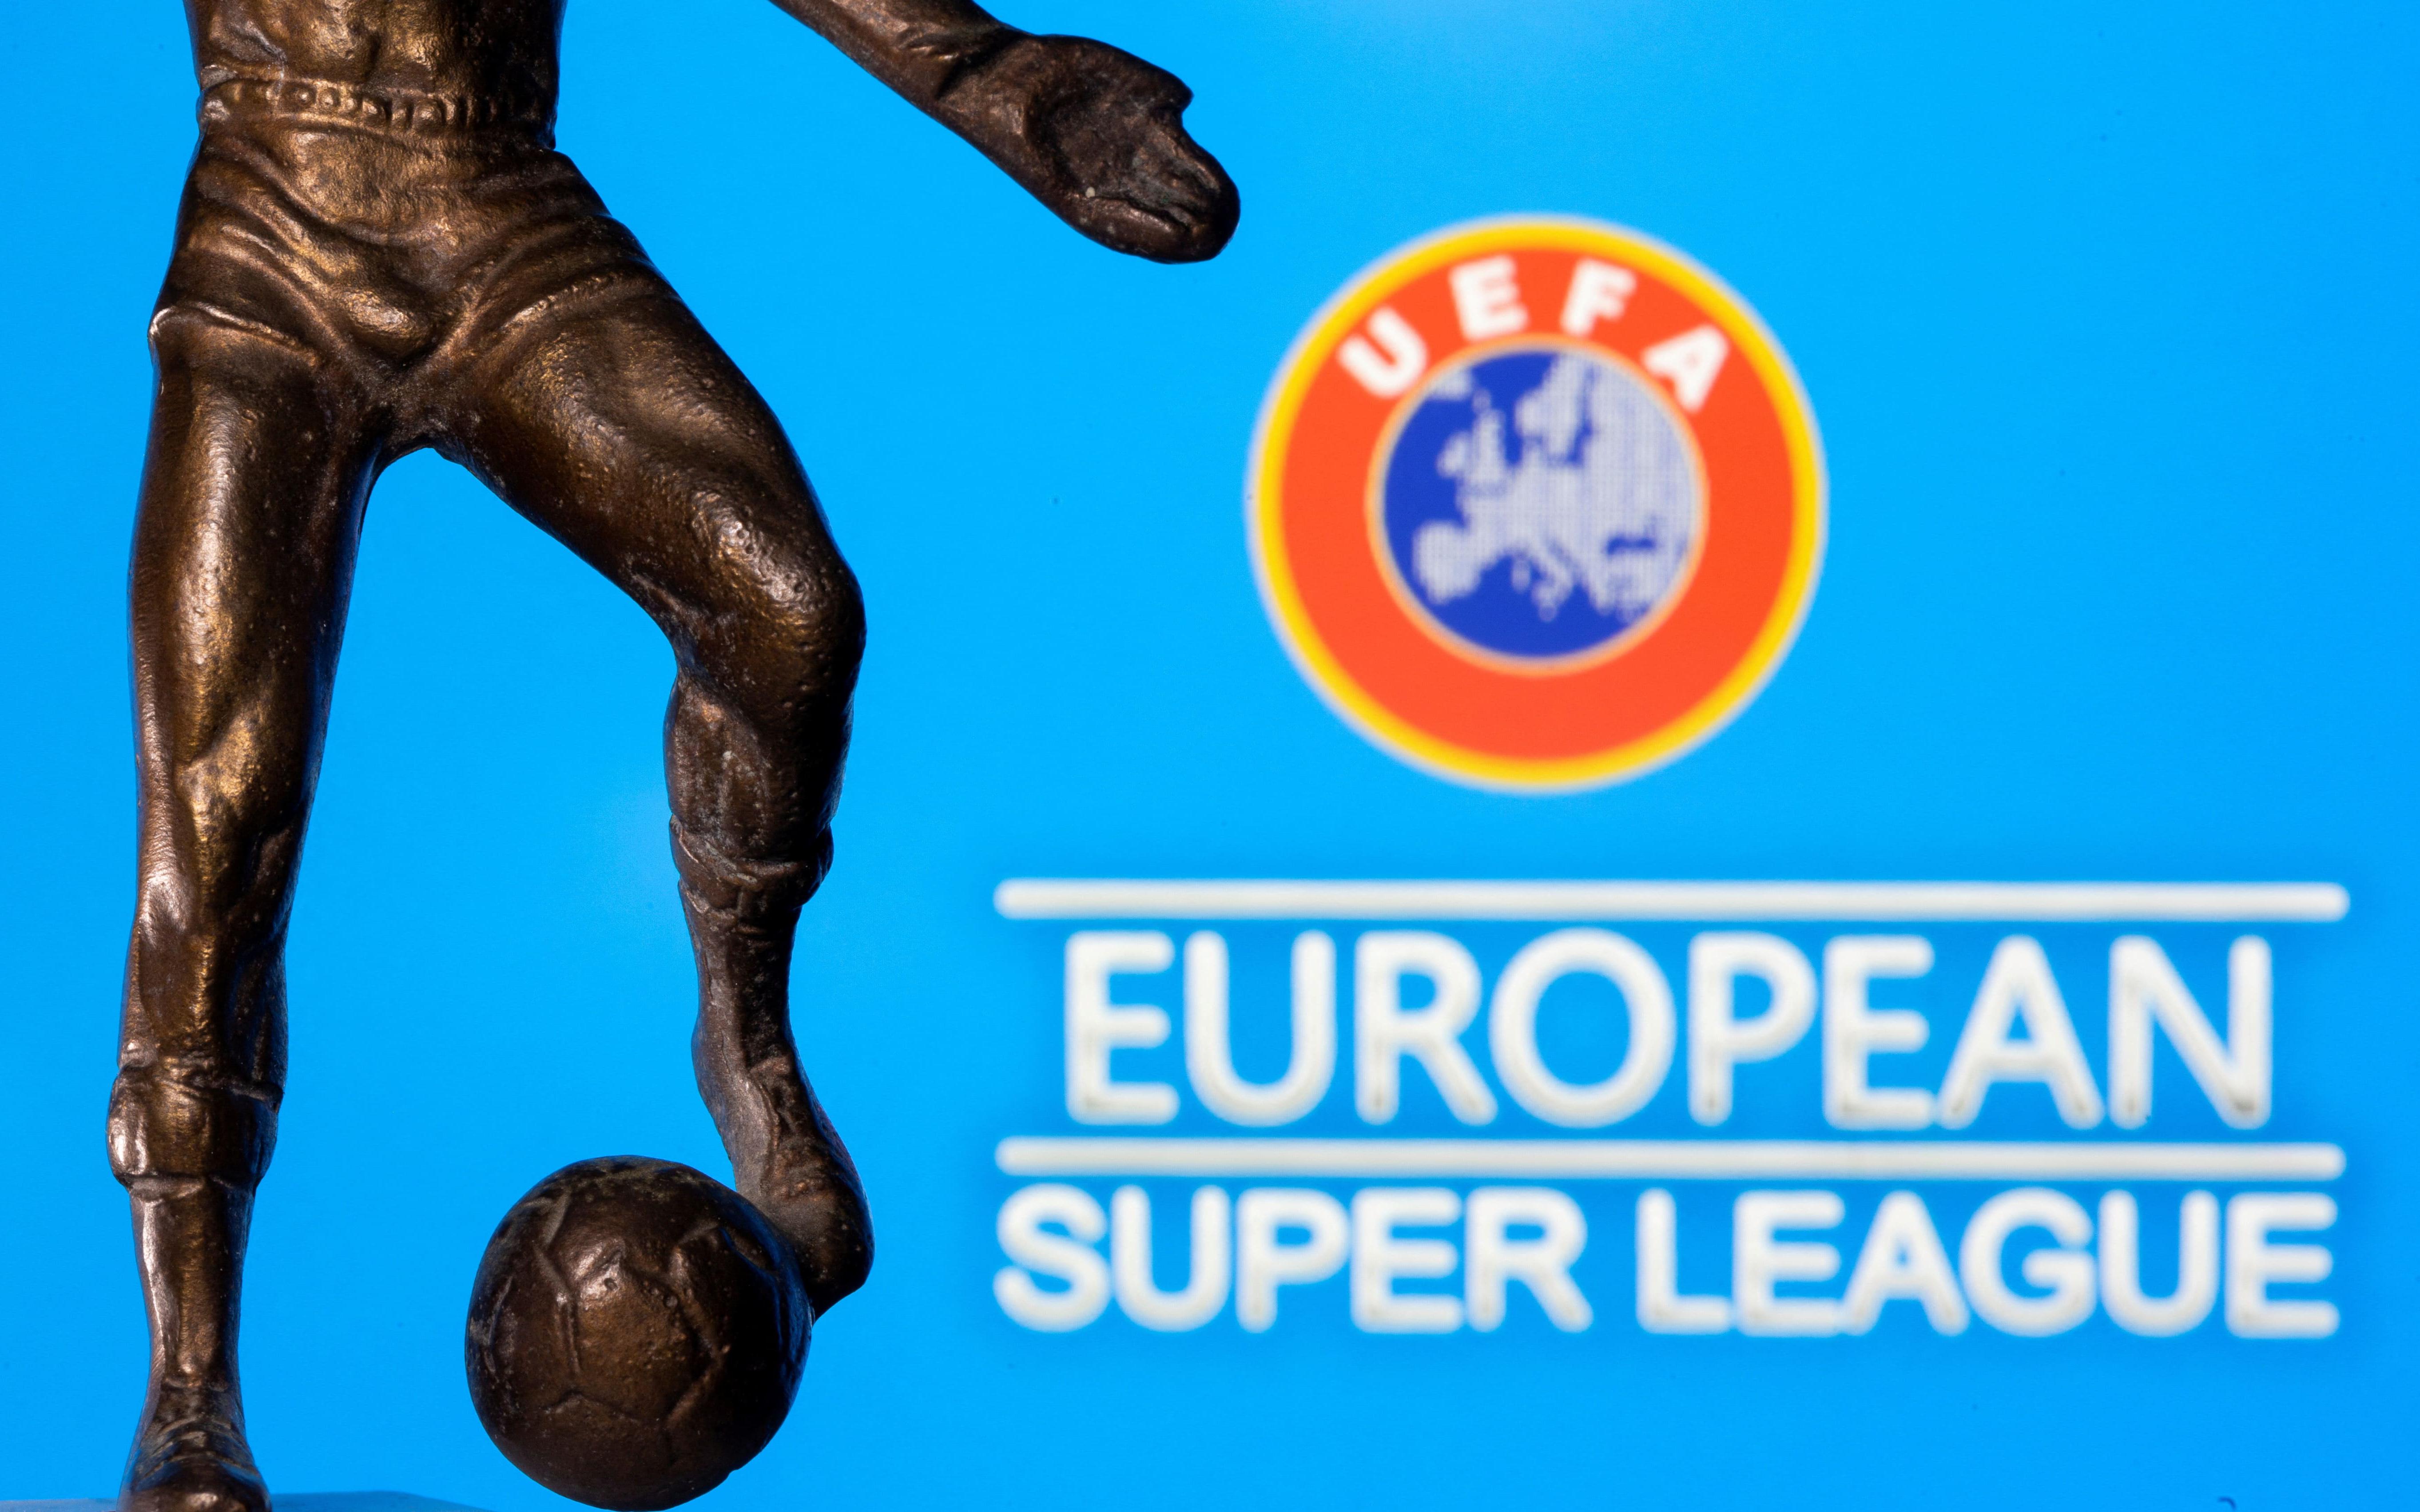 Европейский суд признал незаконным запрет клубам выступать в Суперлиге